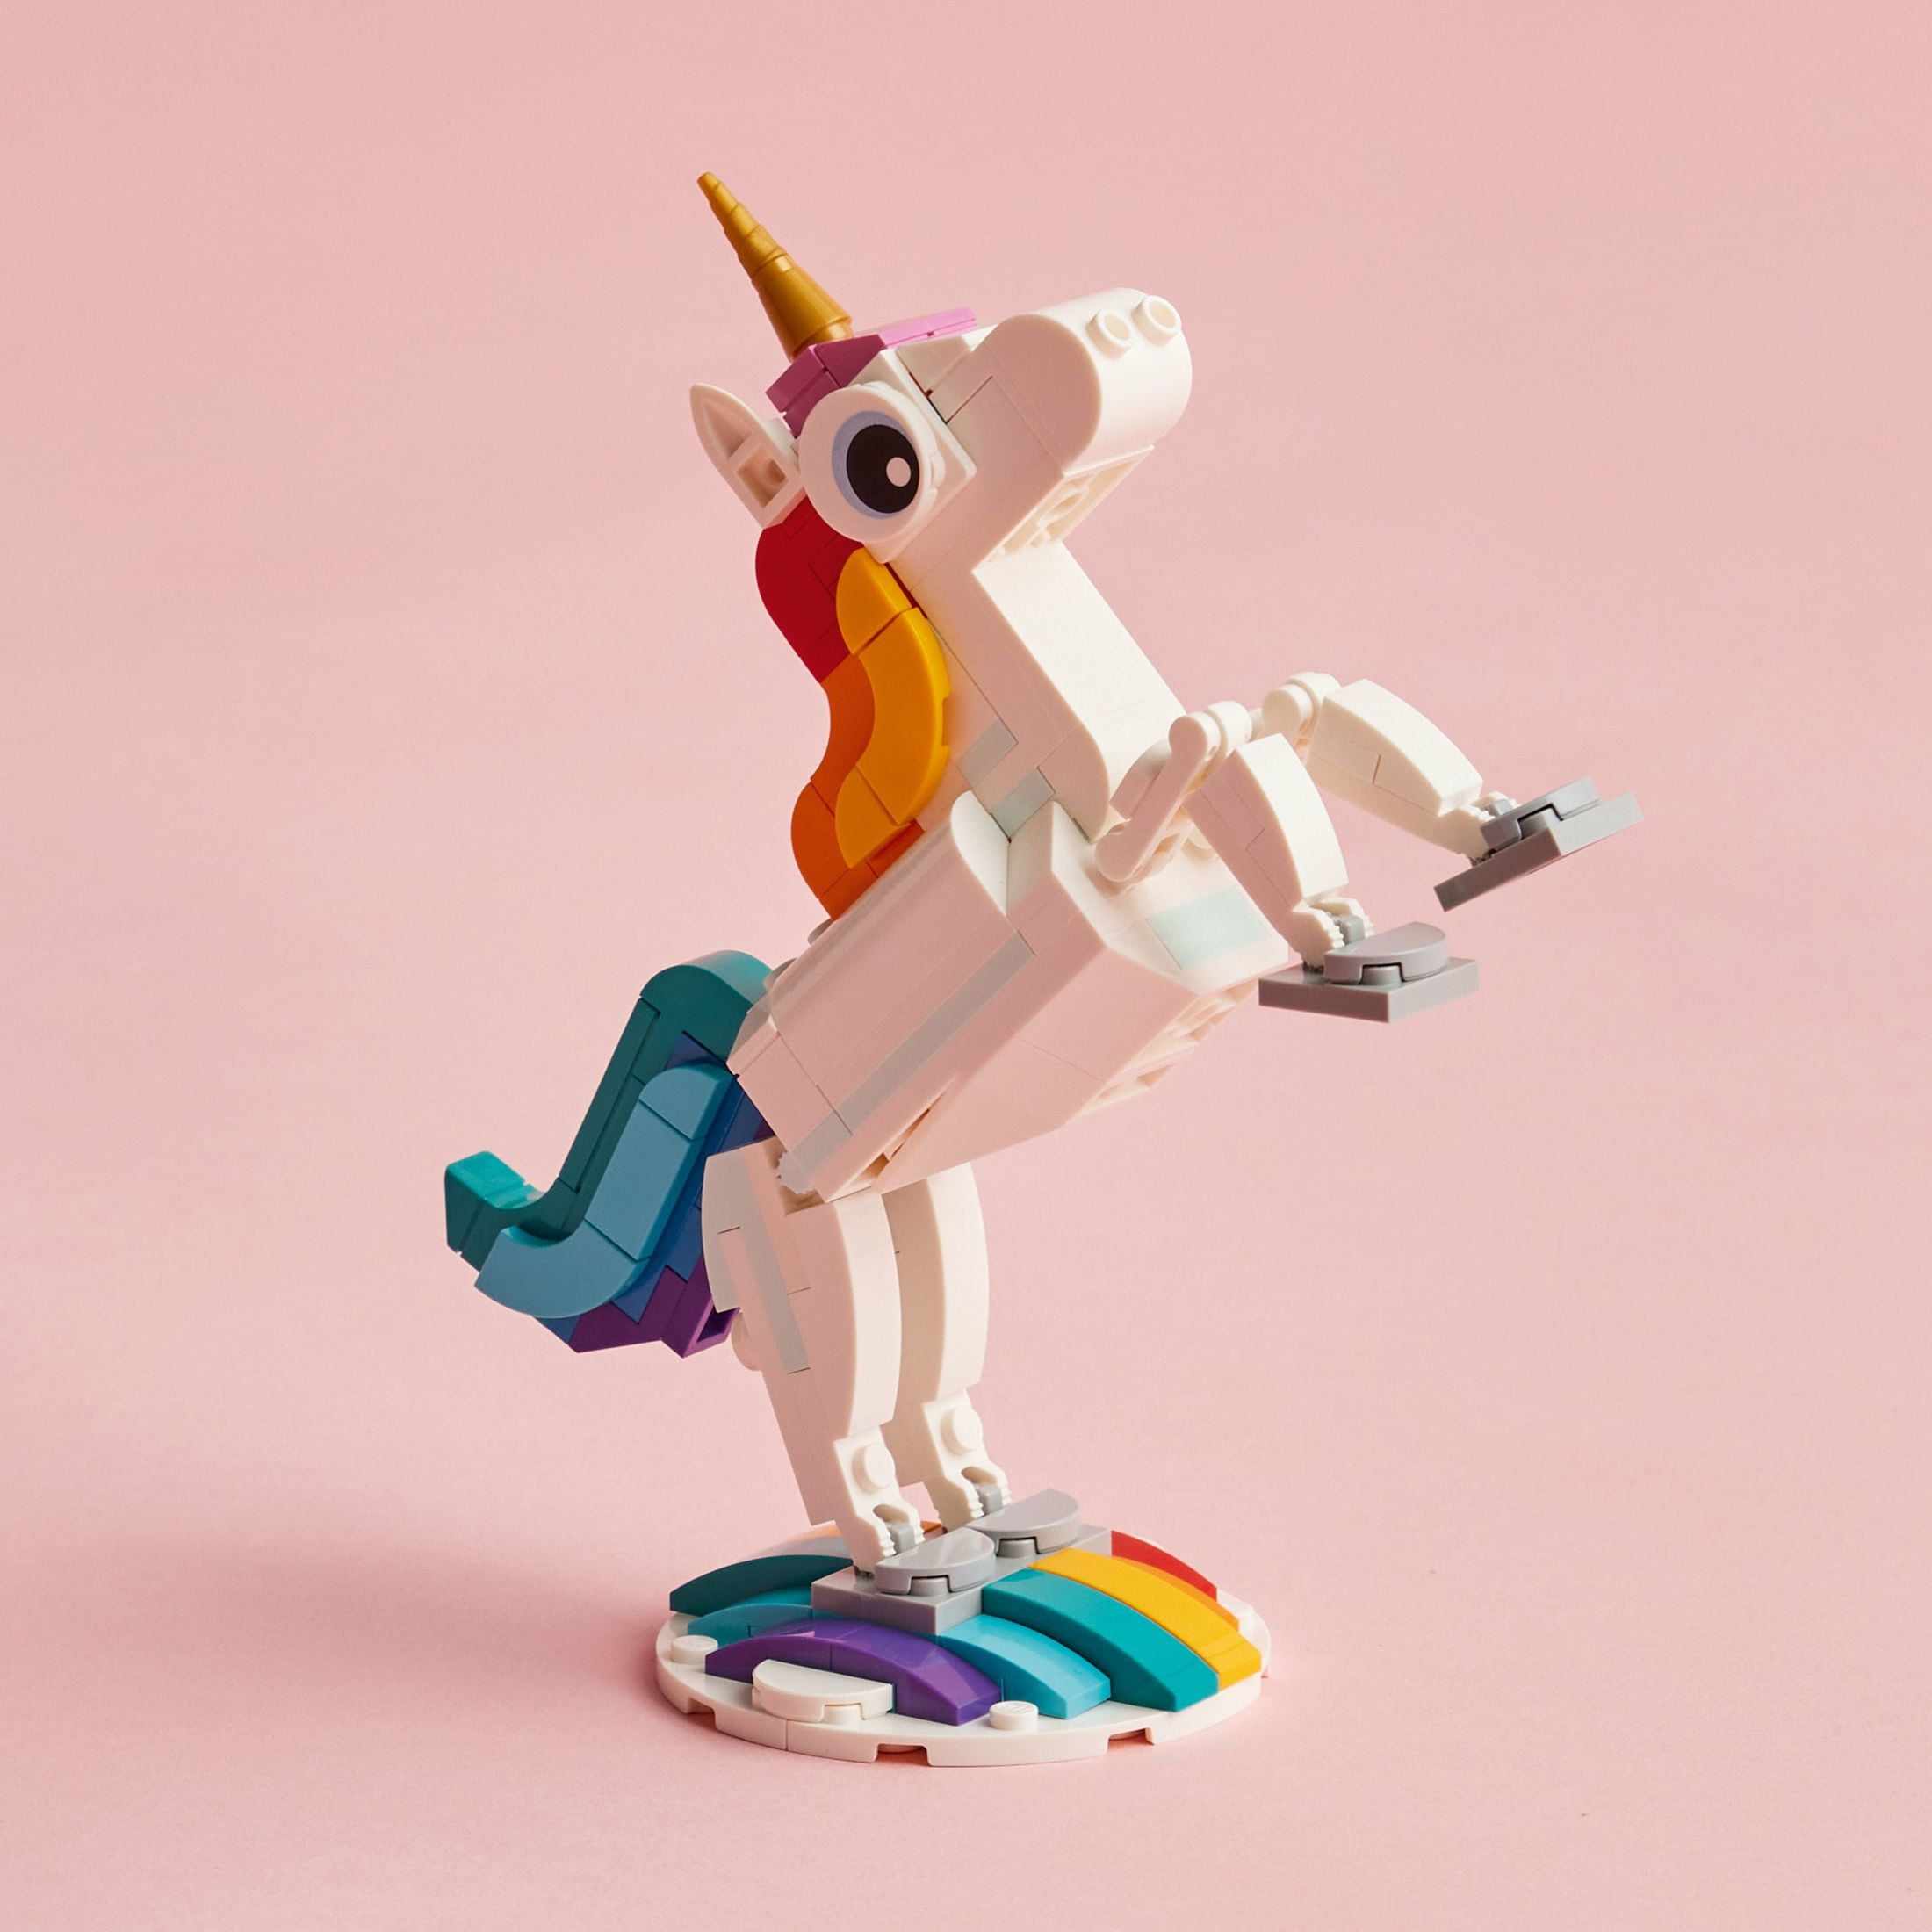 LEGO® 31140 Magical Unicorn - ToyPro